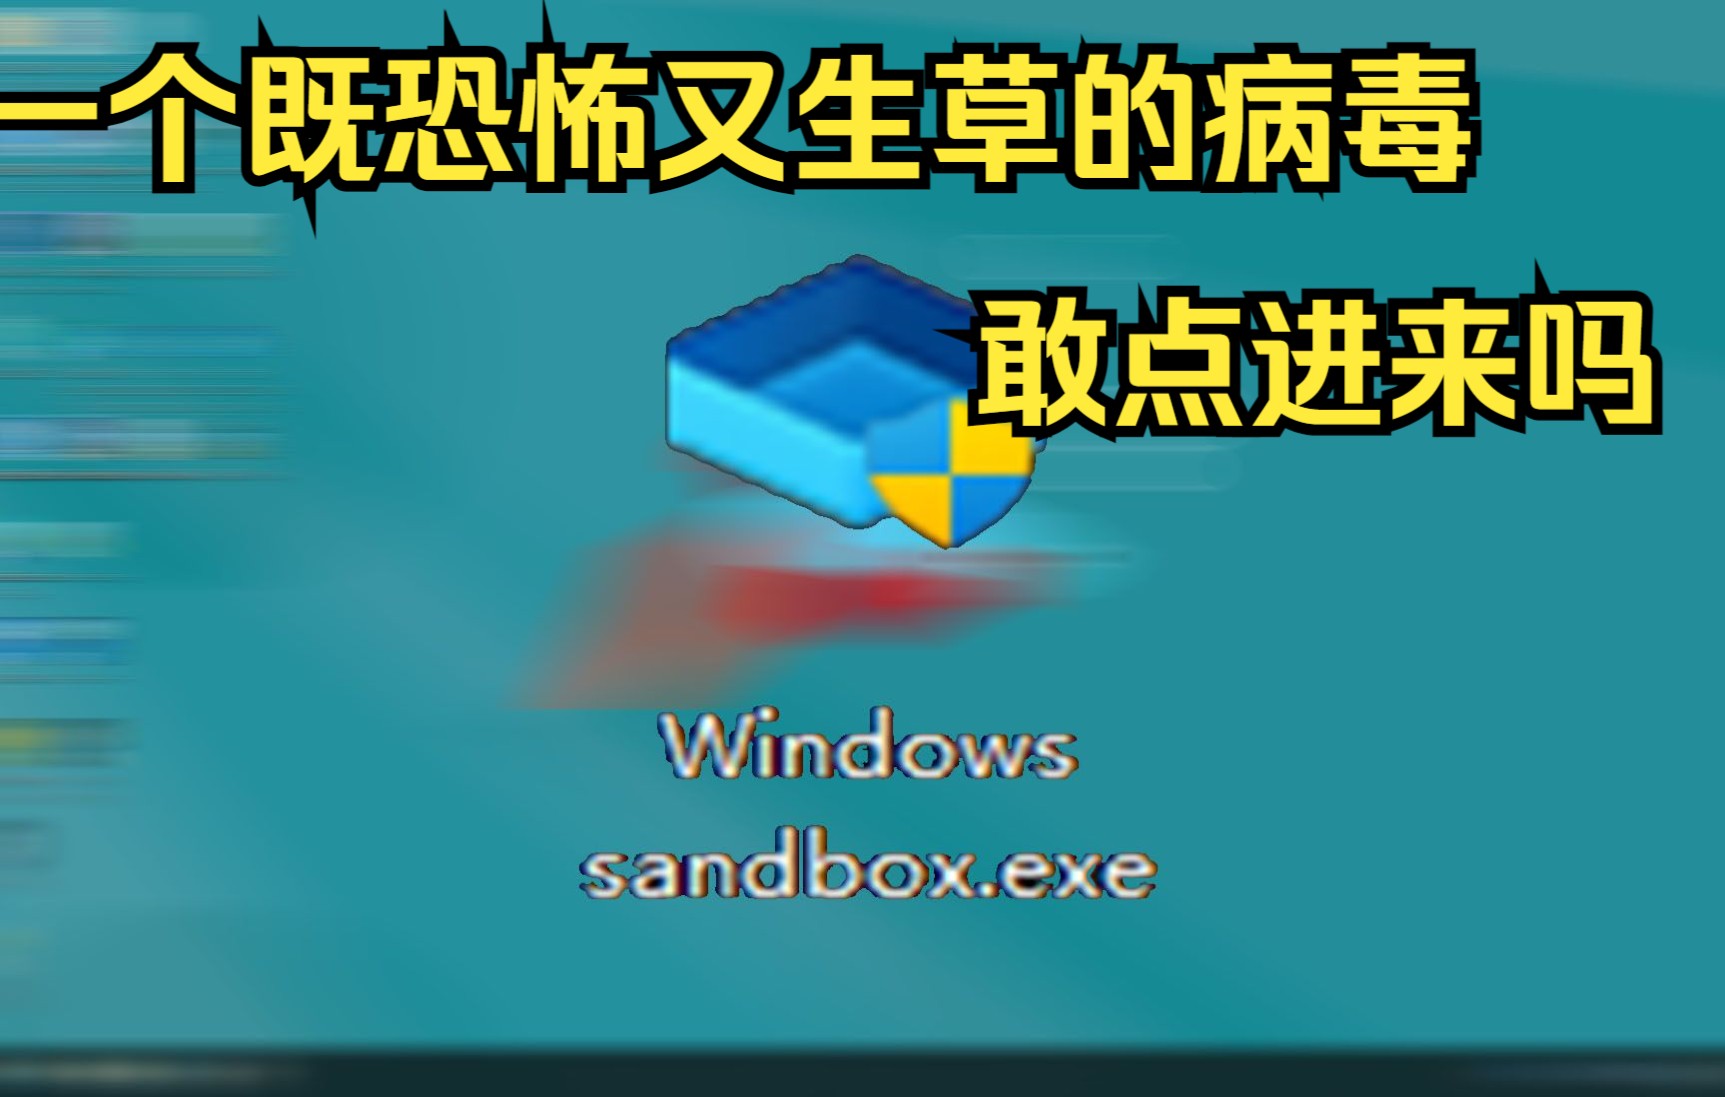 [病毒]一个伪装成沙盒的搞笑病毒:WindowsSandbox.exe